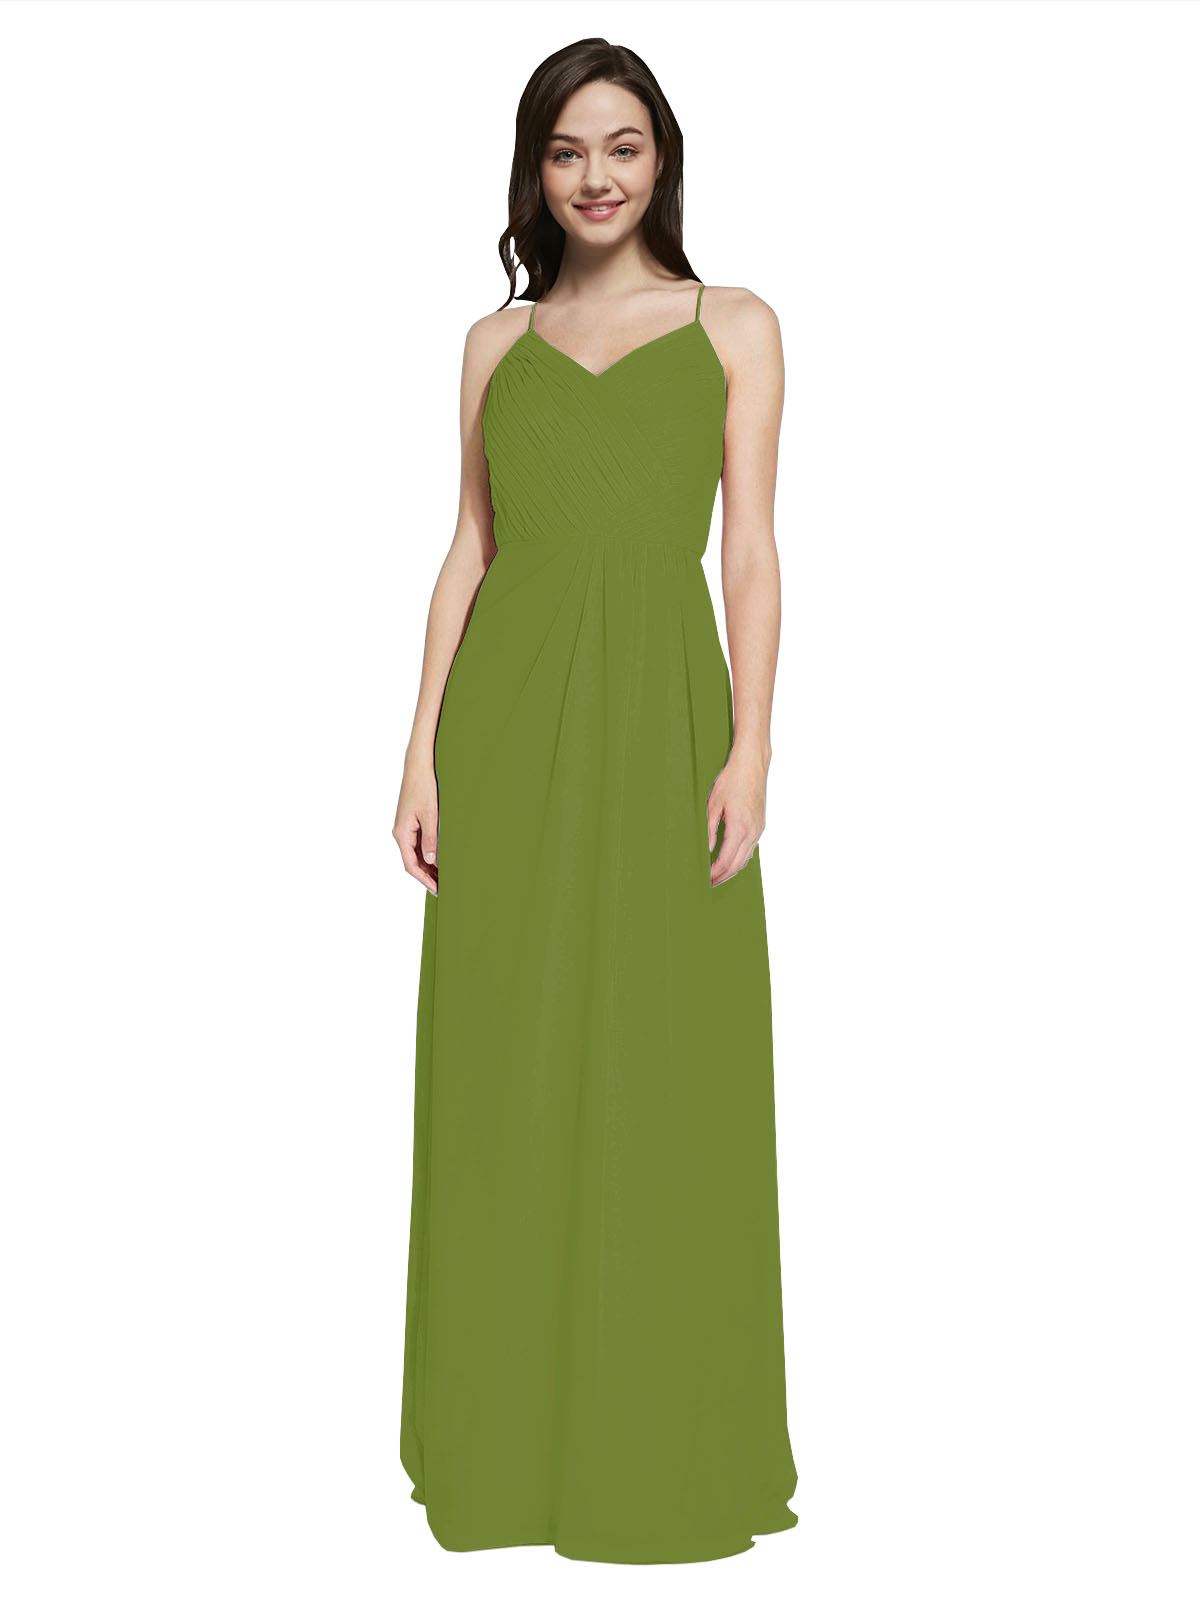 Long Sheath V-Neck Sleeveless Olive Green Chiffon Bridesmaid Dress Marla